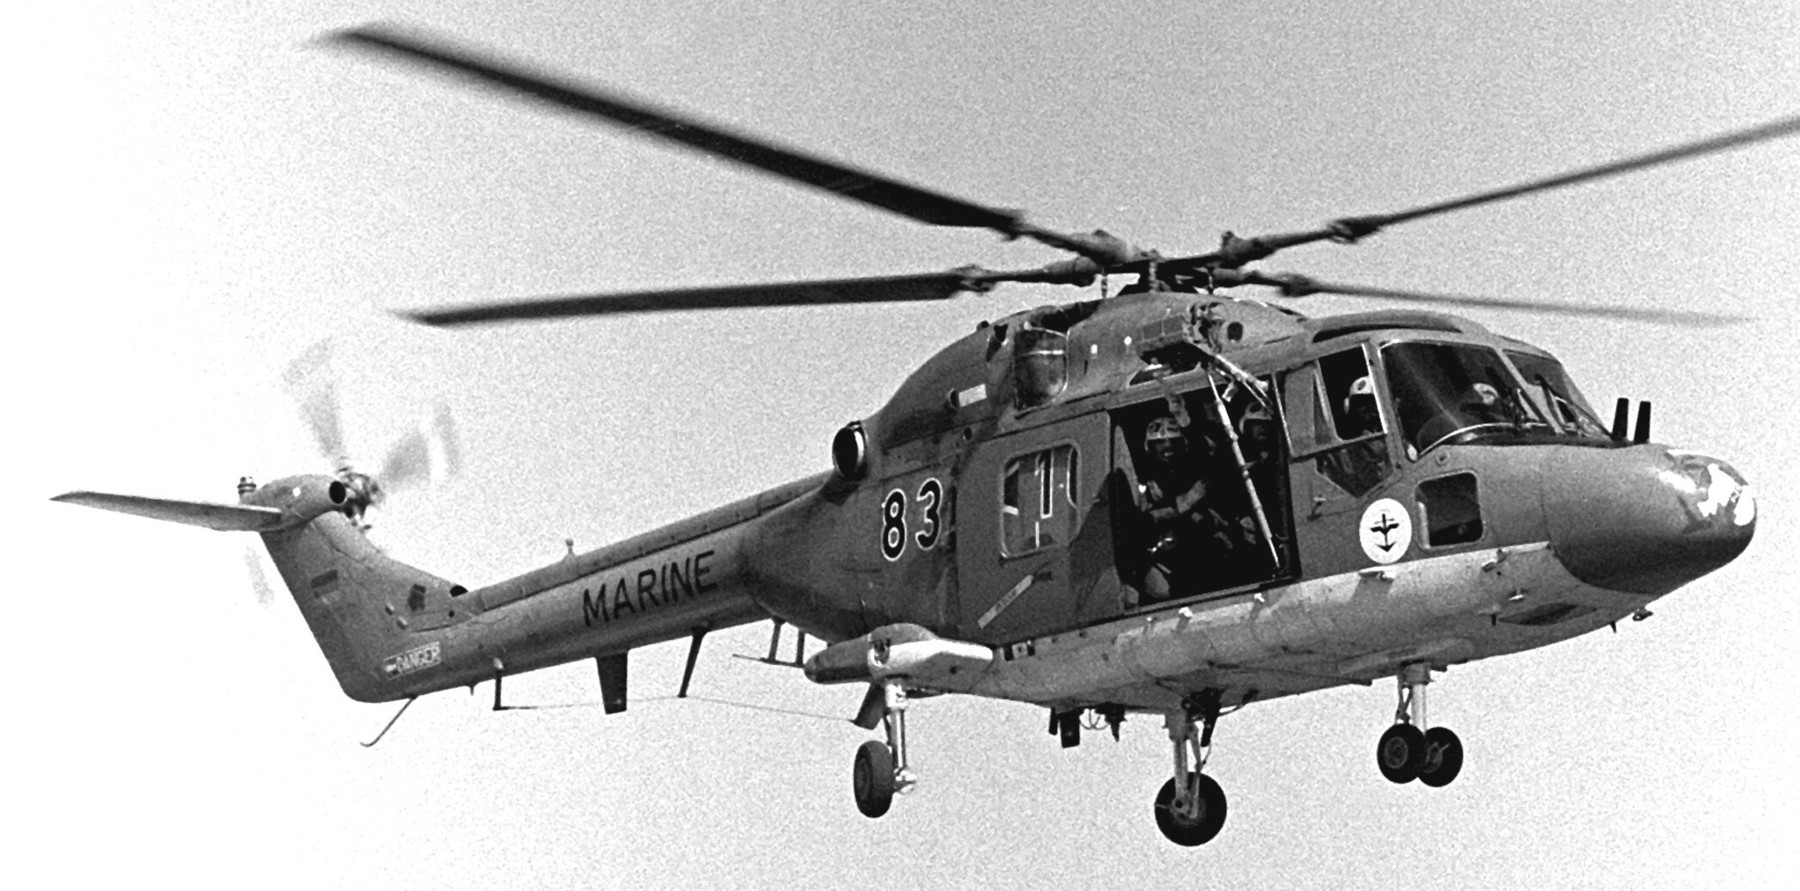 sea lynx mk.88 westland naval helicopter german navy deutsche marine 02